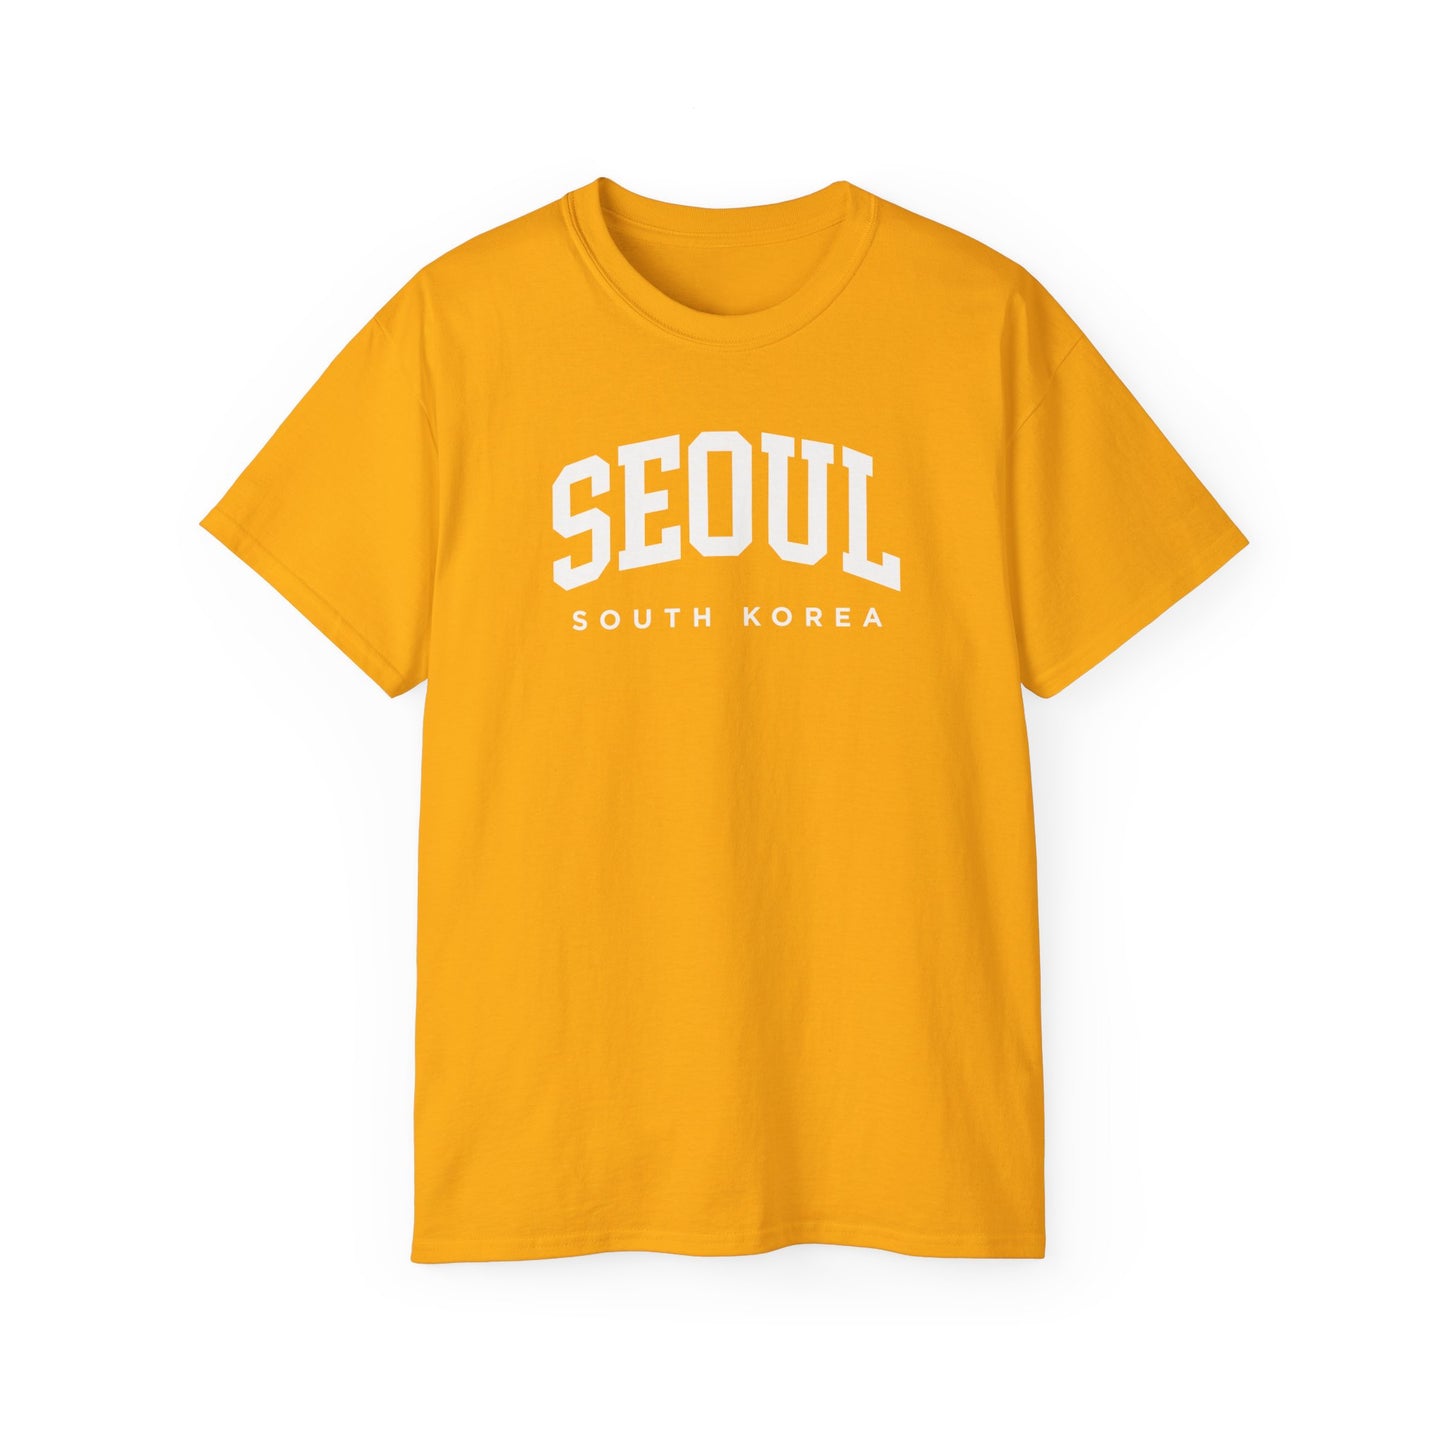 Seoul South Korea Tee